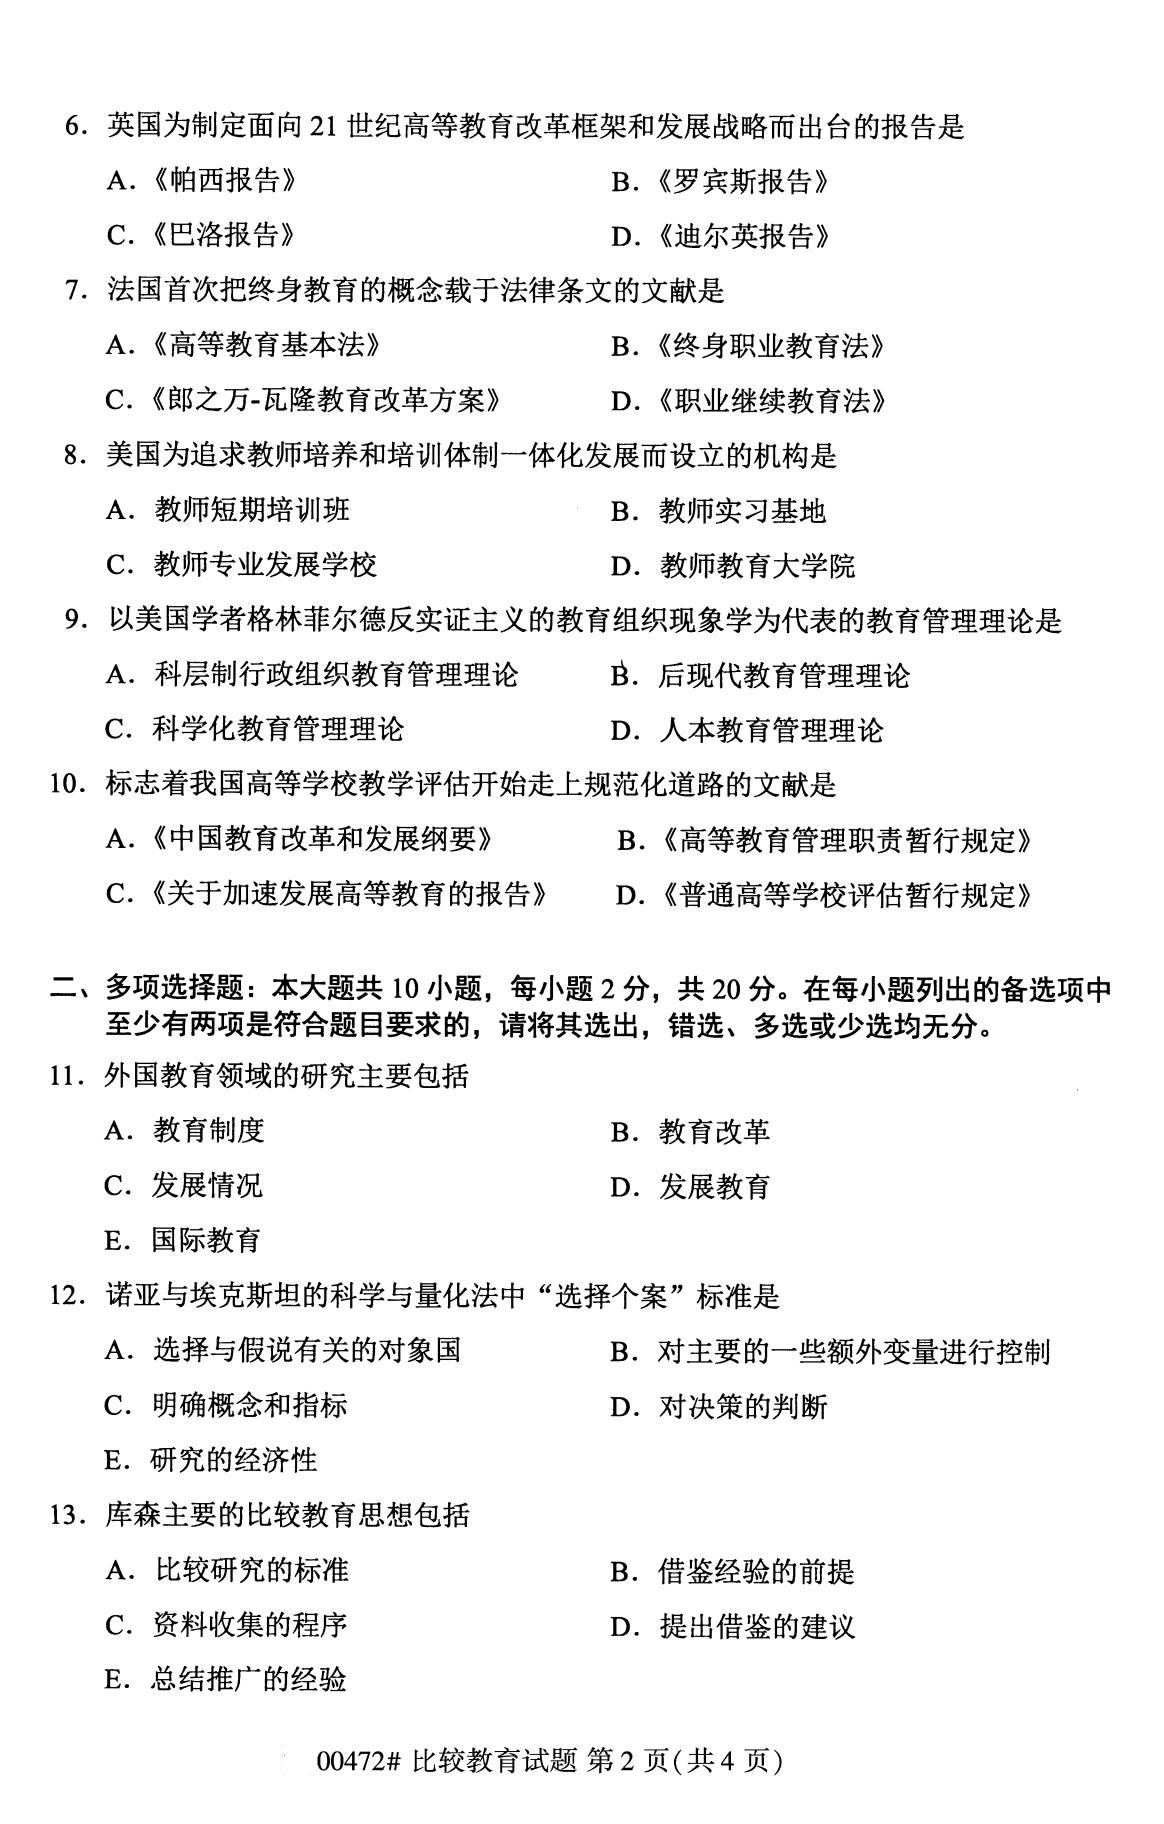 四川省2020年8月自学考试本科比较教育真题(图2)